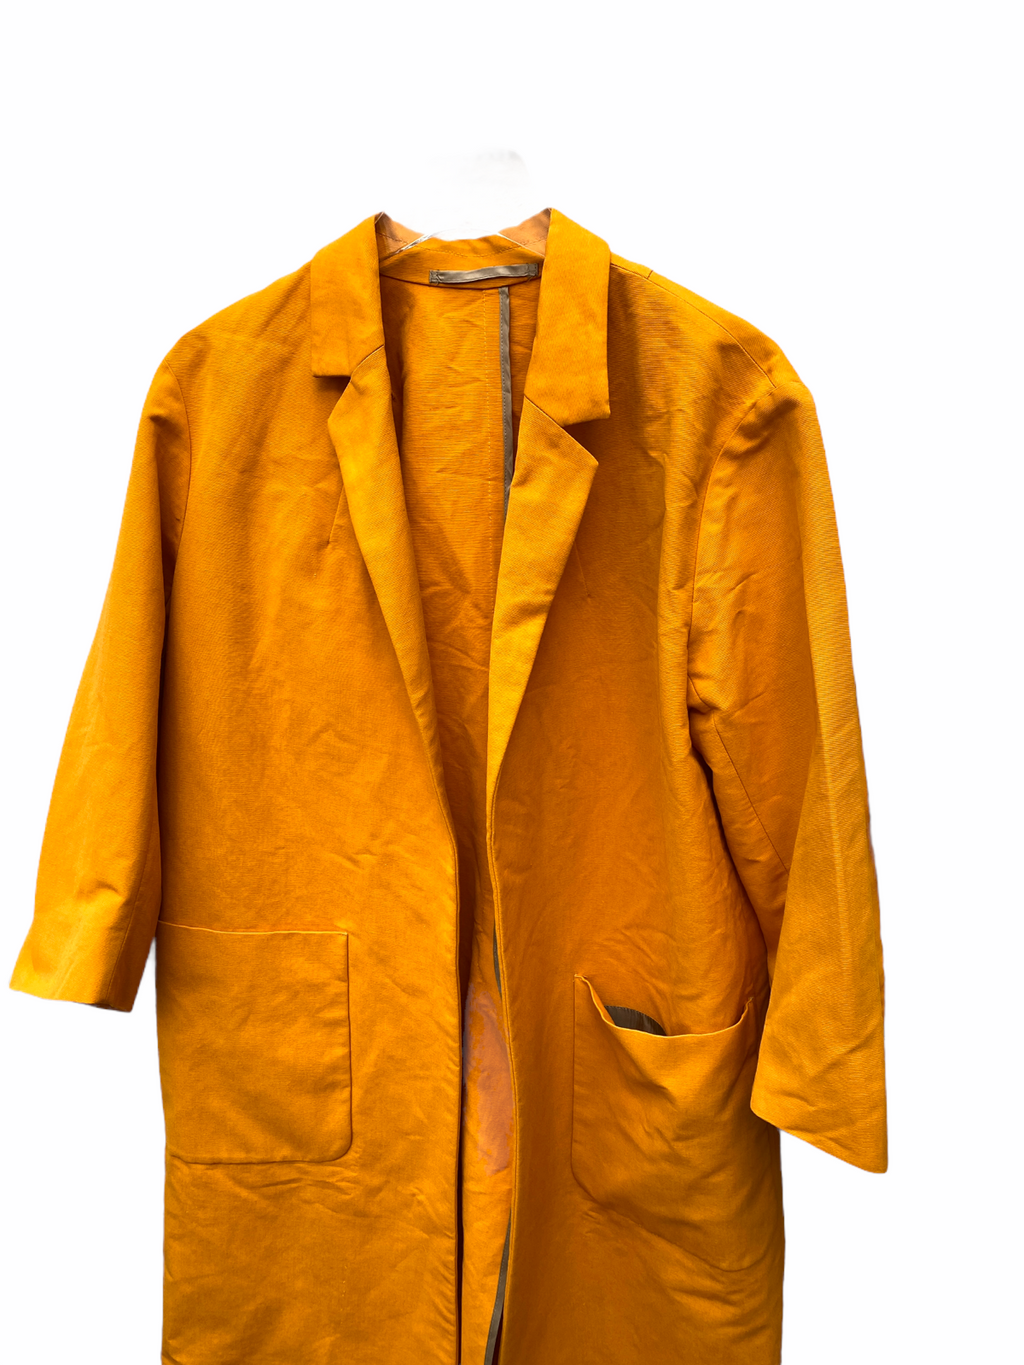 Oversized Orange Coat 3/4 Sleeves